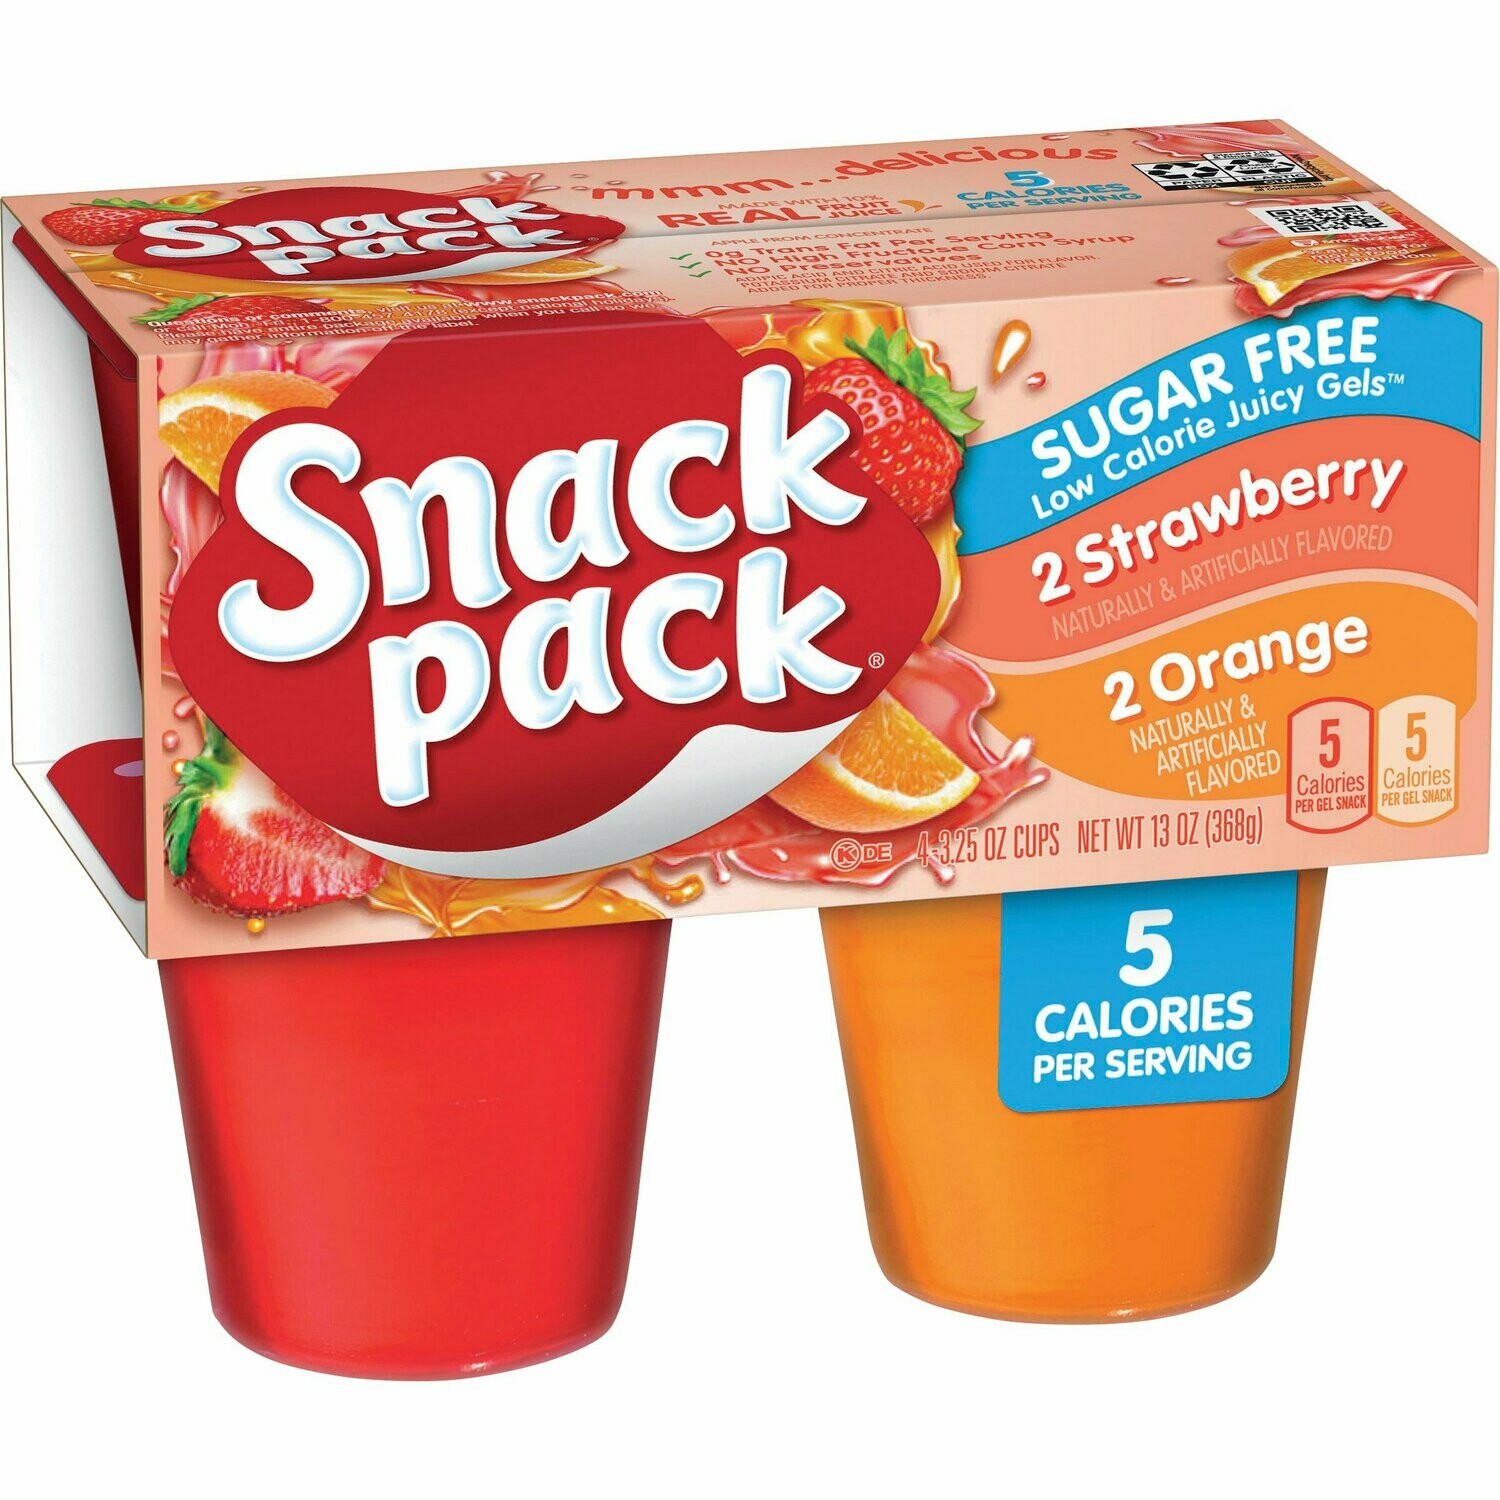 Snack Pack Strawberry/Organge Juicy Gels Sugar Free